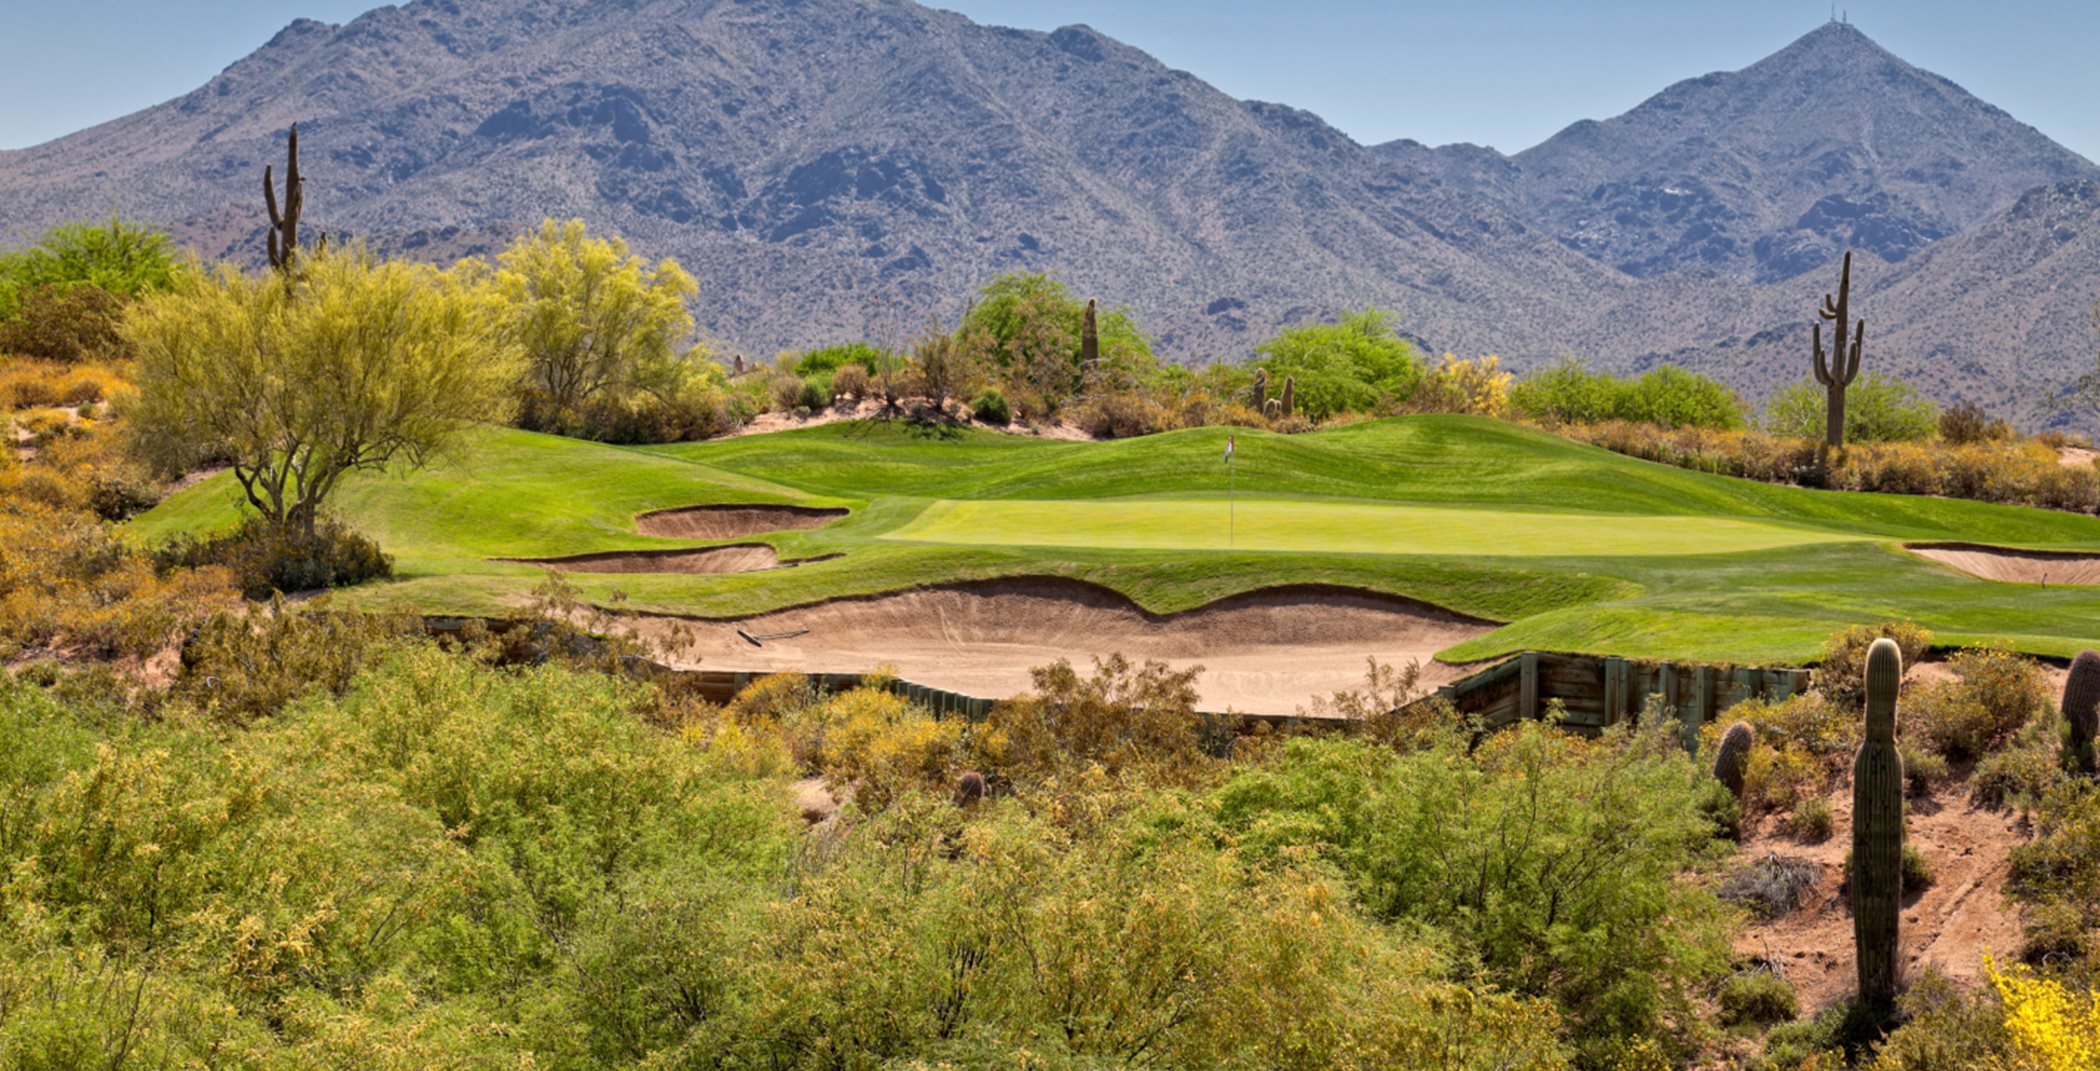 A desert golf course